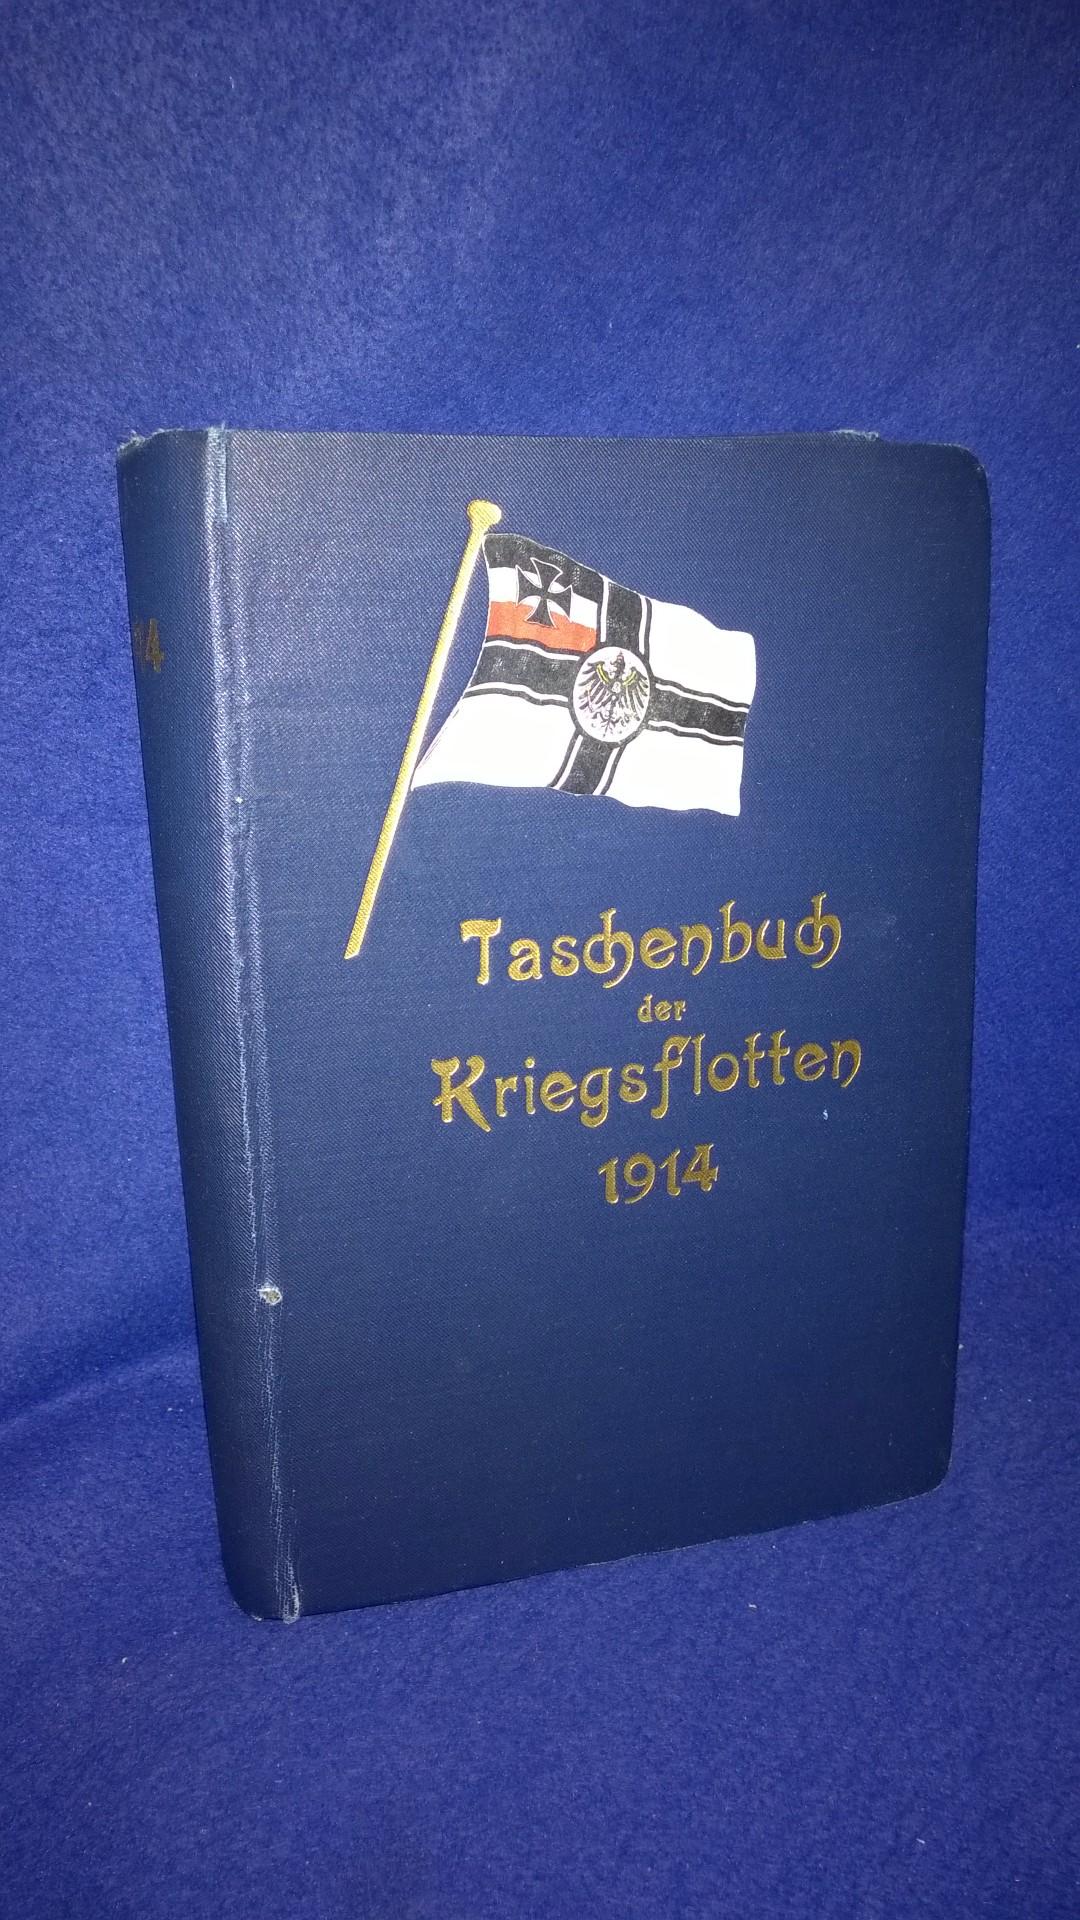 Taschenbuch der Kriegsflotten XV. Jahrgang 1914. 